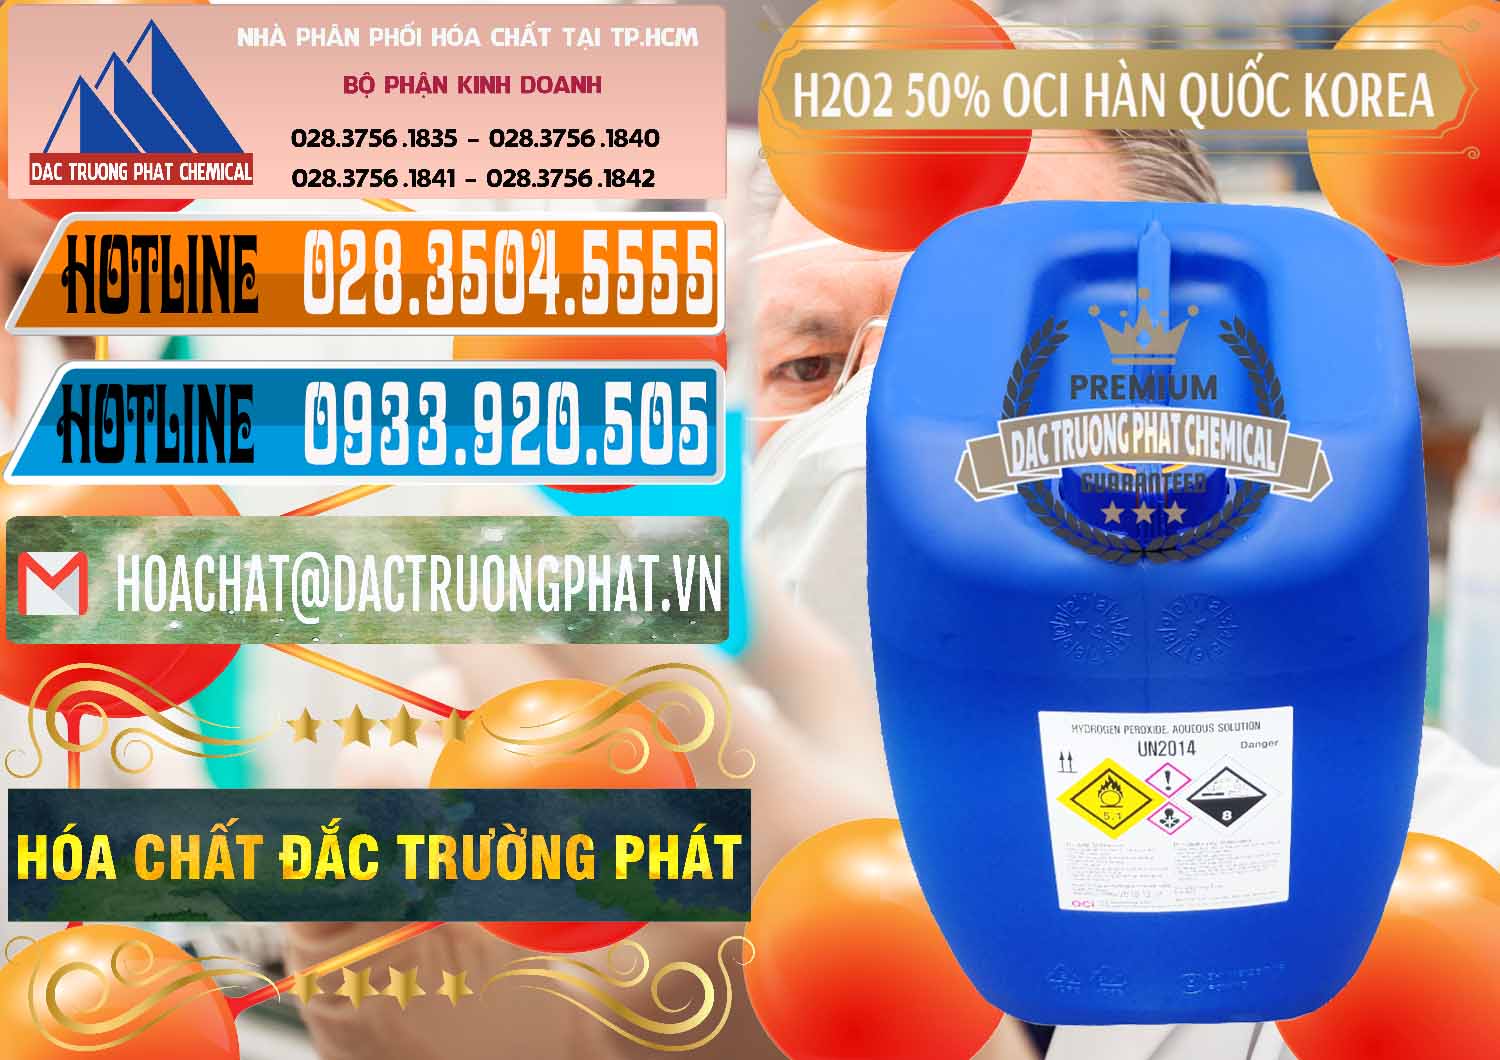 Nơi phân phối và bán H2O2 - Hydrogen Peroxide 50% OCI Hàn Quốc Korea - 0075 - Nhà nhập khẩu & cung cấp hóa chất tại TP.HCM - stmp.net